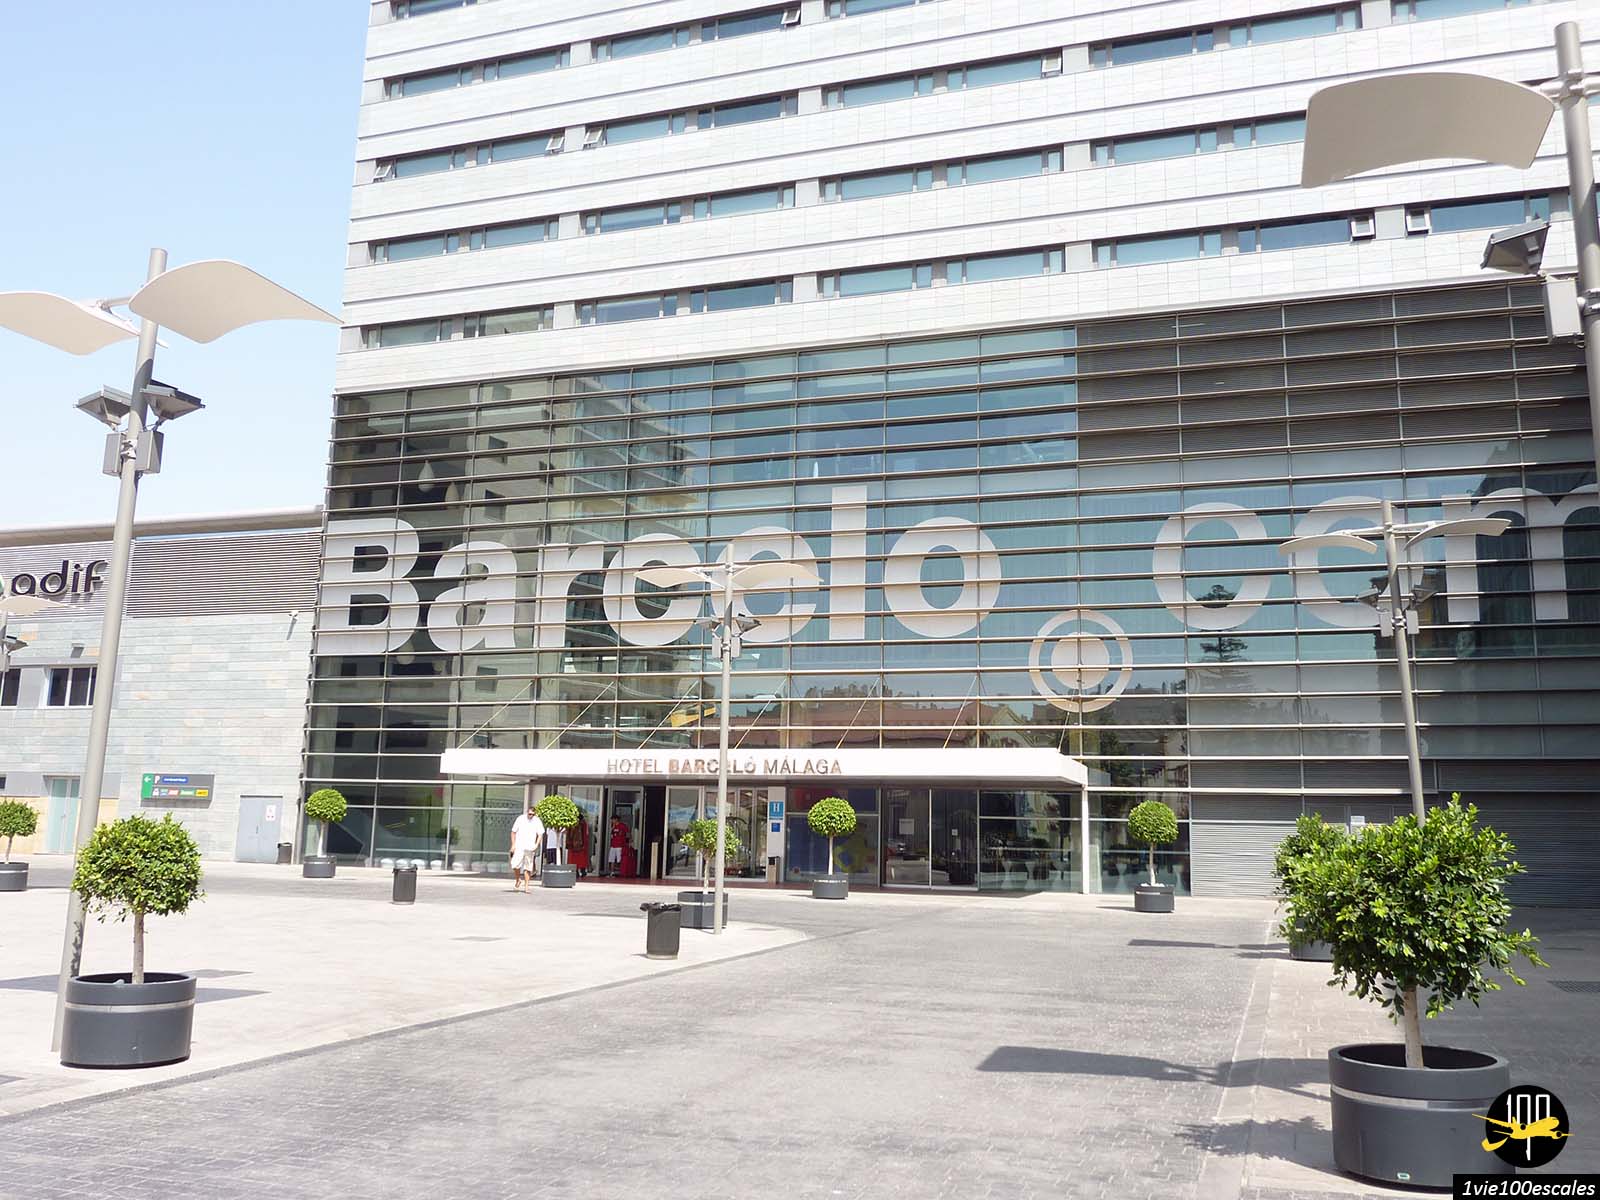 L'entrée de l'hotel Barceló Málaga situé juste à côté de la gare